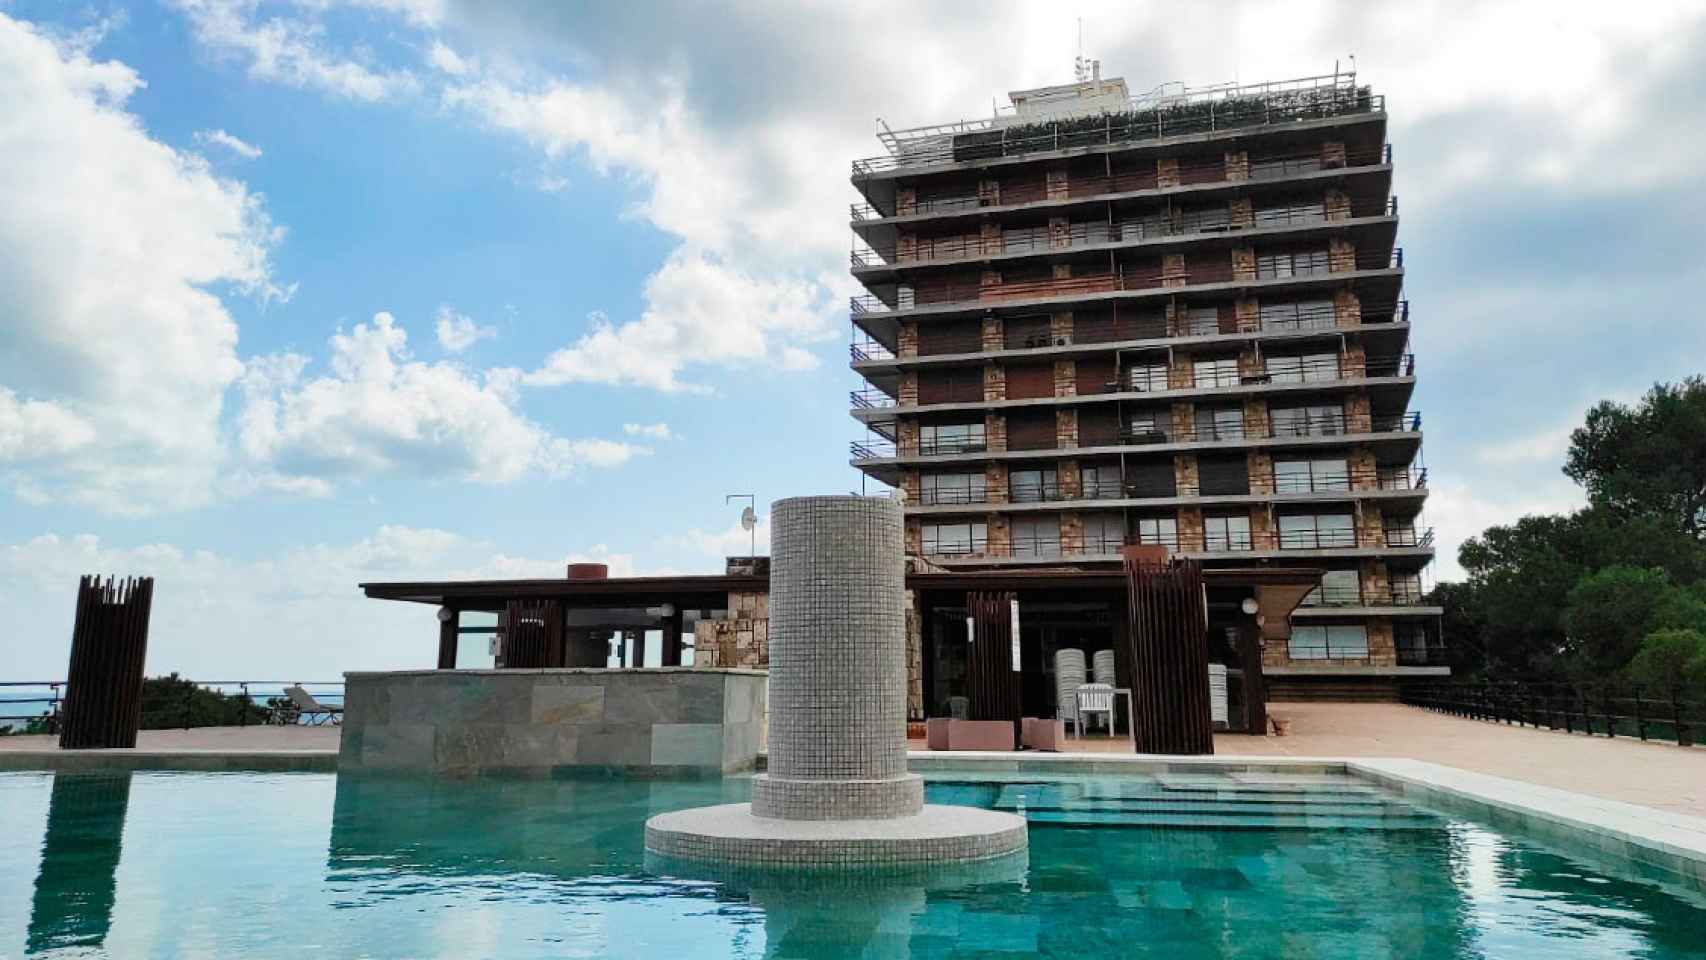 Zona de piscina en Torre Valentina de Girona, el 'refugio de Abramovich' en la Costa Brava / CG